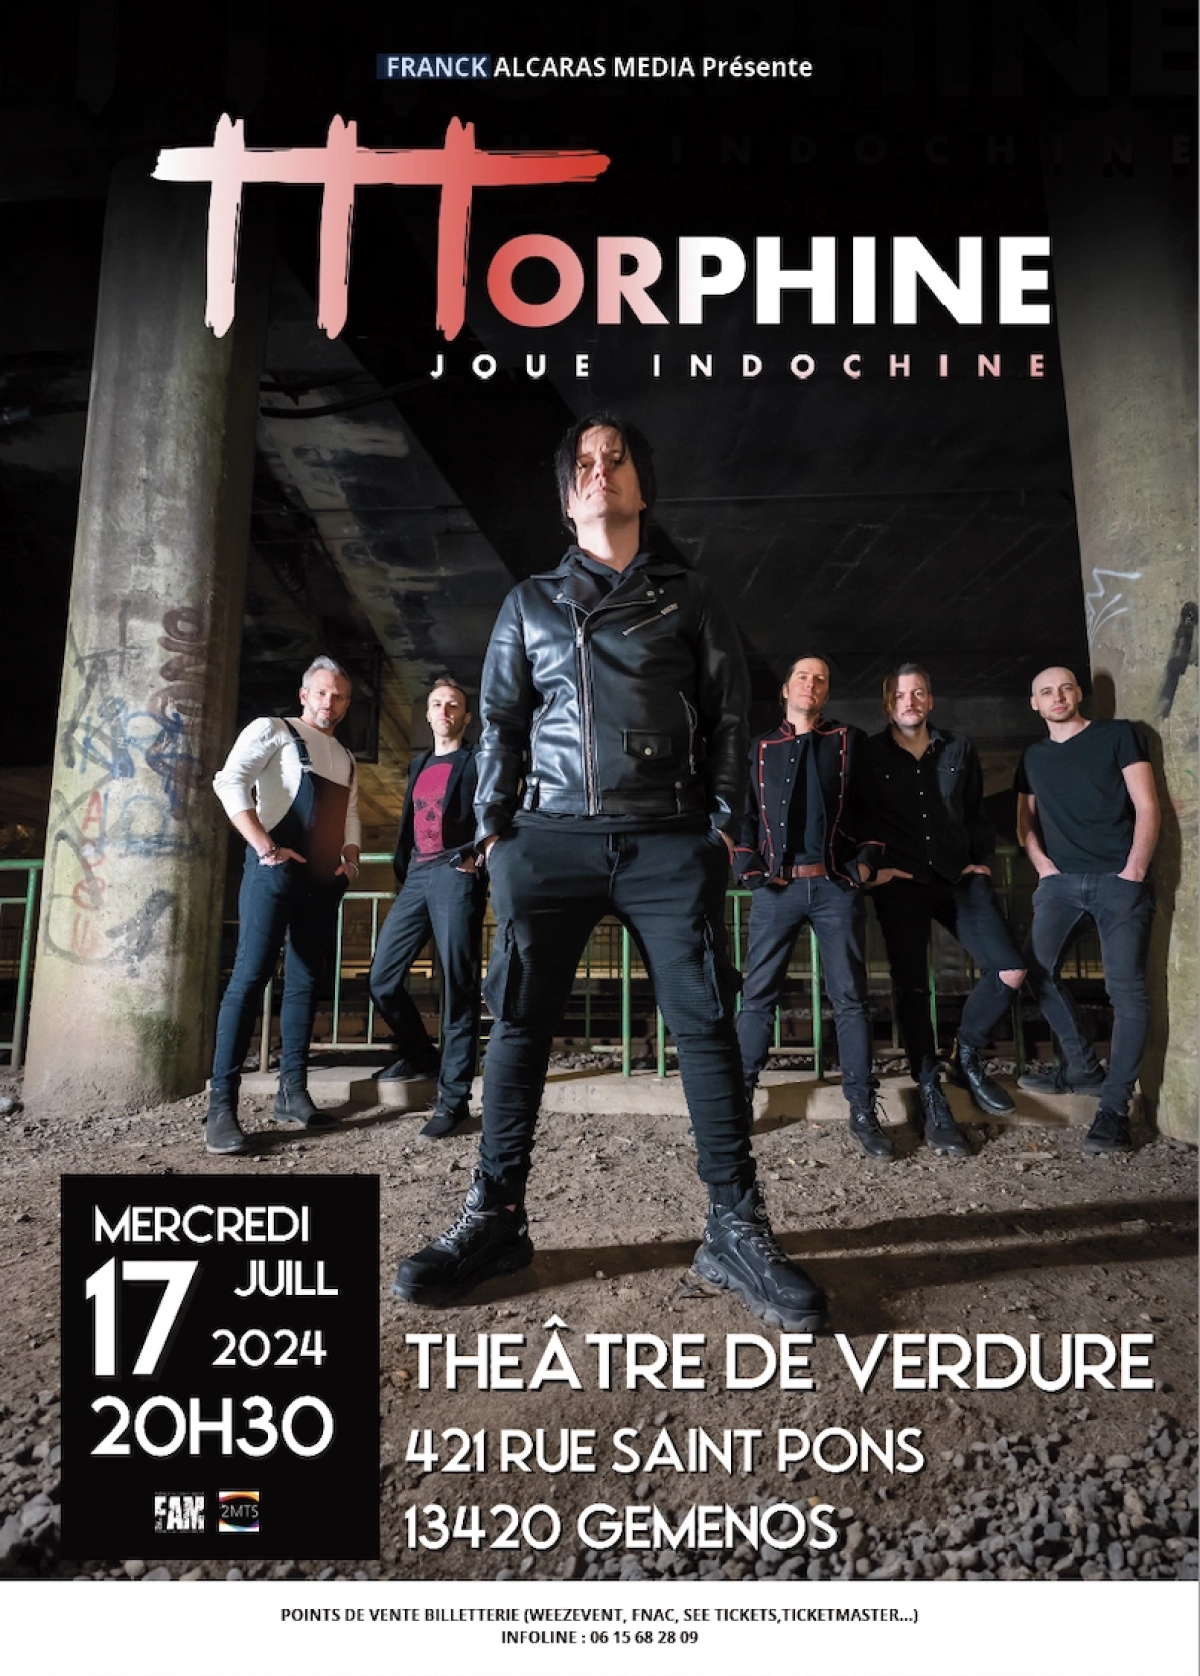 Morphine Joue Indochine al Theatre De Verdure Gemenos Tickets